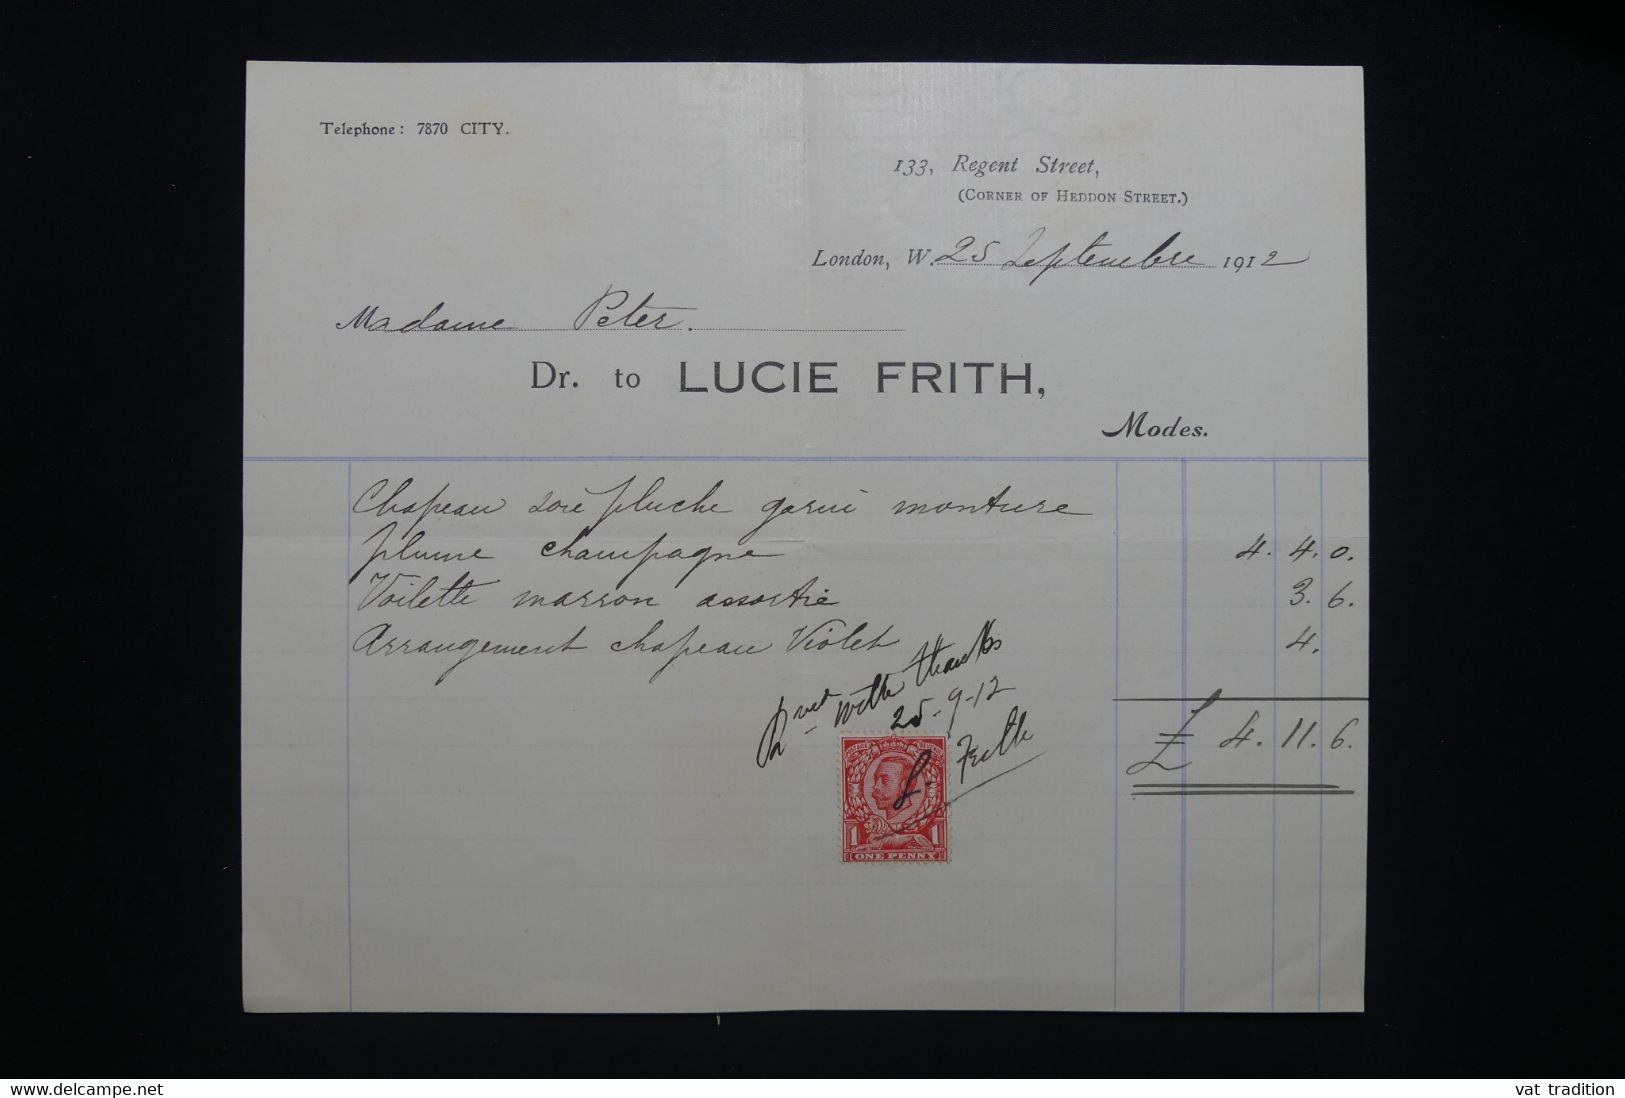 ROYAUME UNI - Timbre Posta à Usage Fiscal Sur Document De Londres En 1912  - L 98167 - Fiscale Zegels